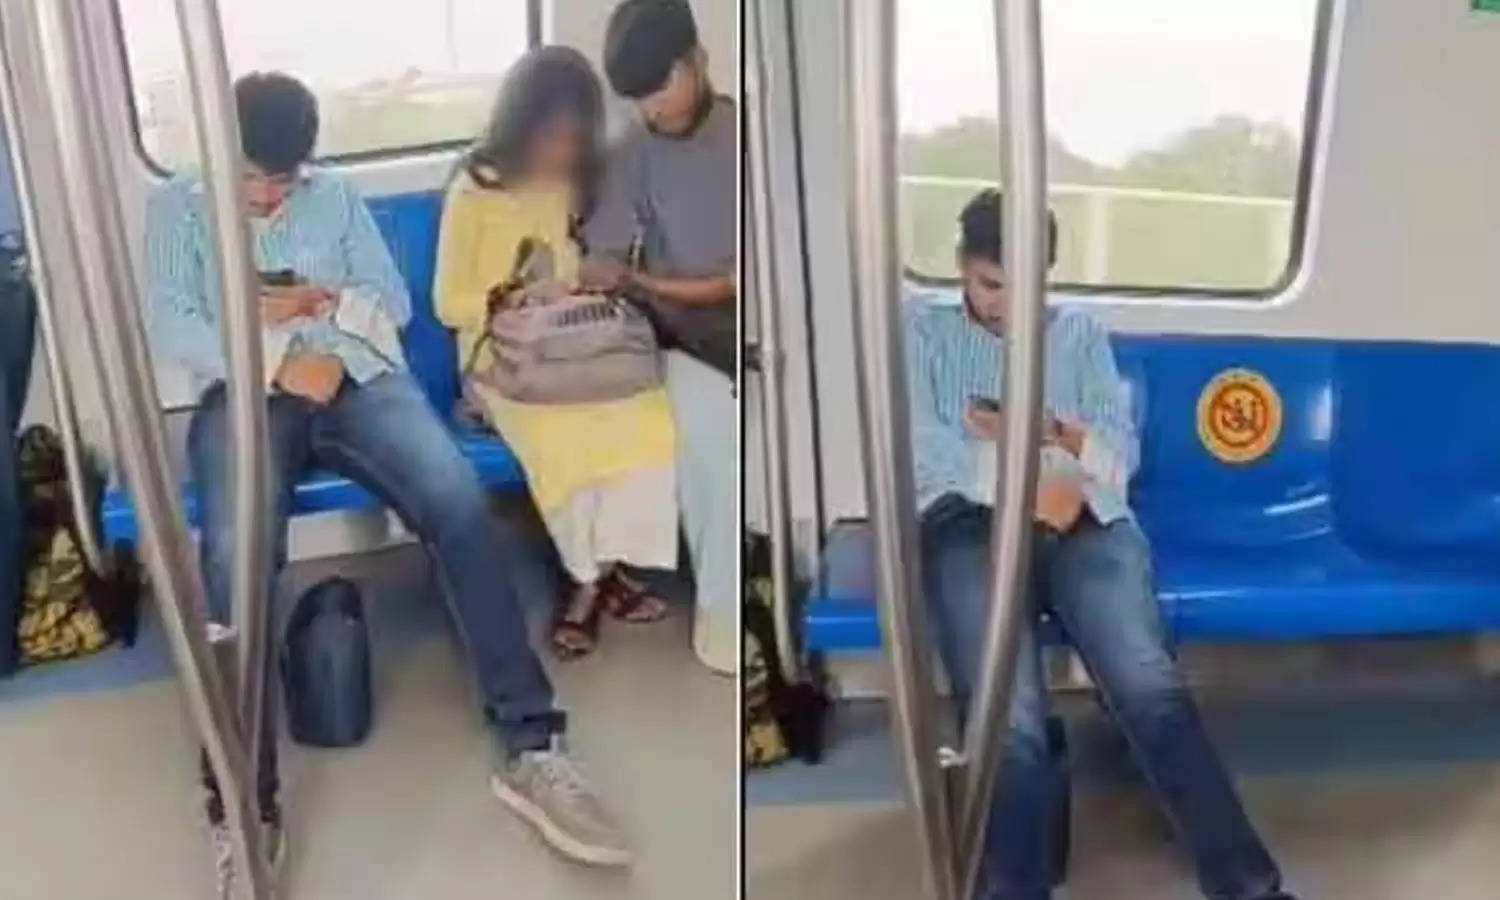 Delhi Metro : लड़का कर रहा था ये गन्दा काम, अब वायरल हो रहा है वीडियो